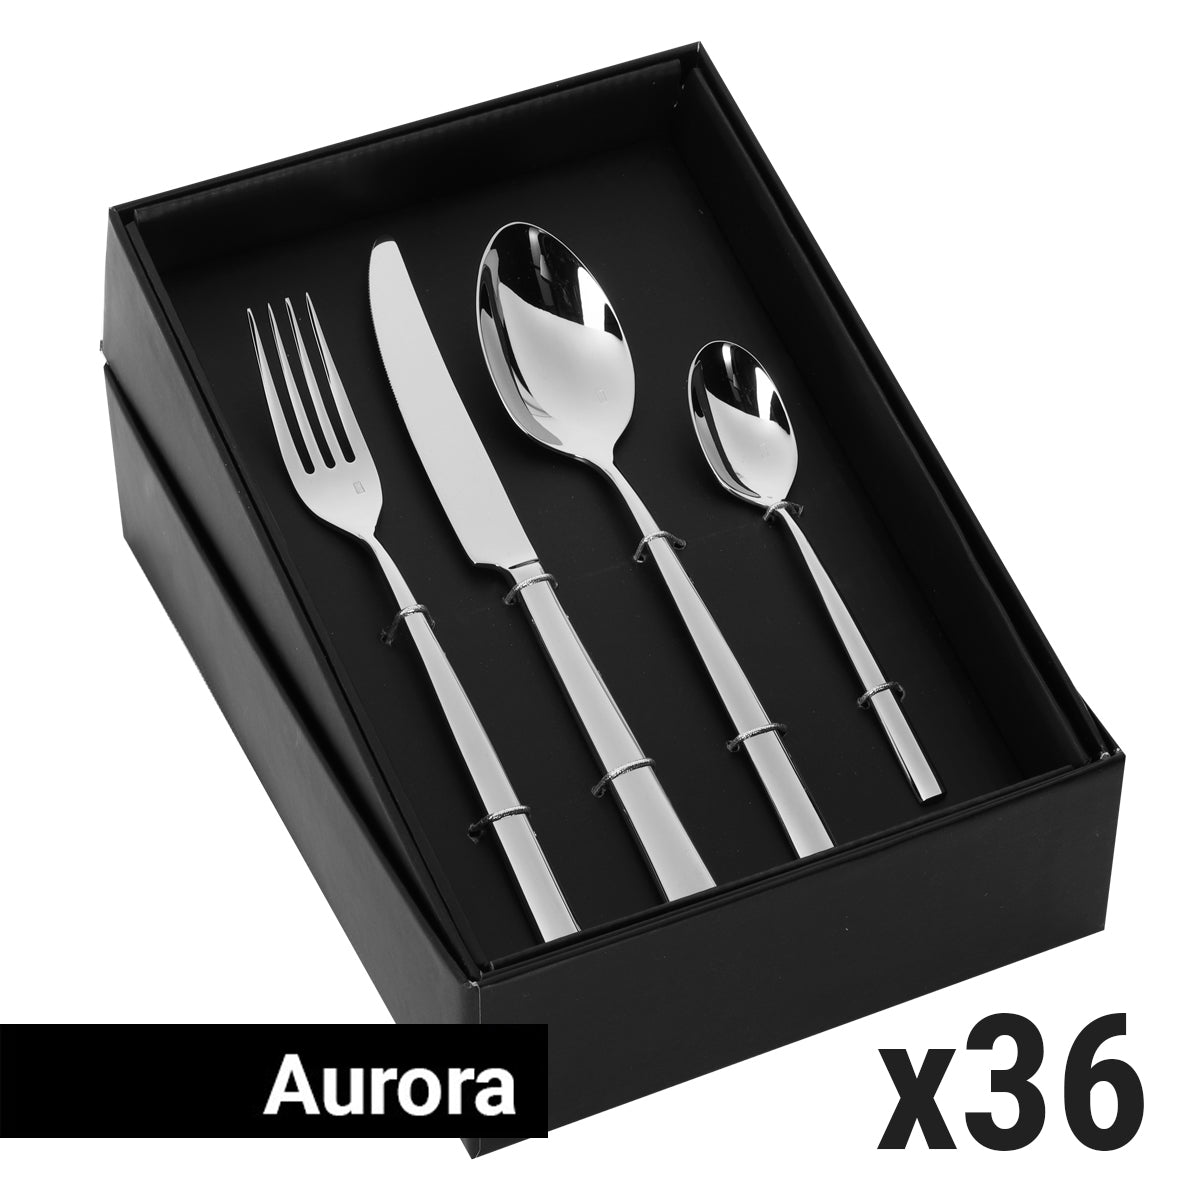 (144 stykker) Bestikksett Aurora - 144 stk. - For 36 personer